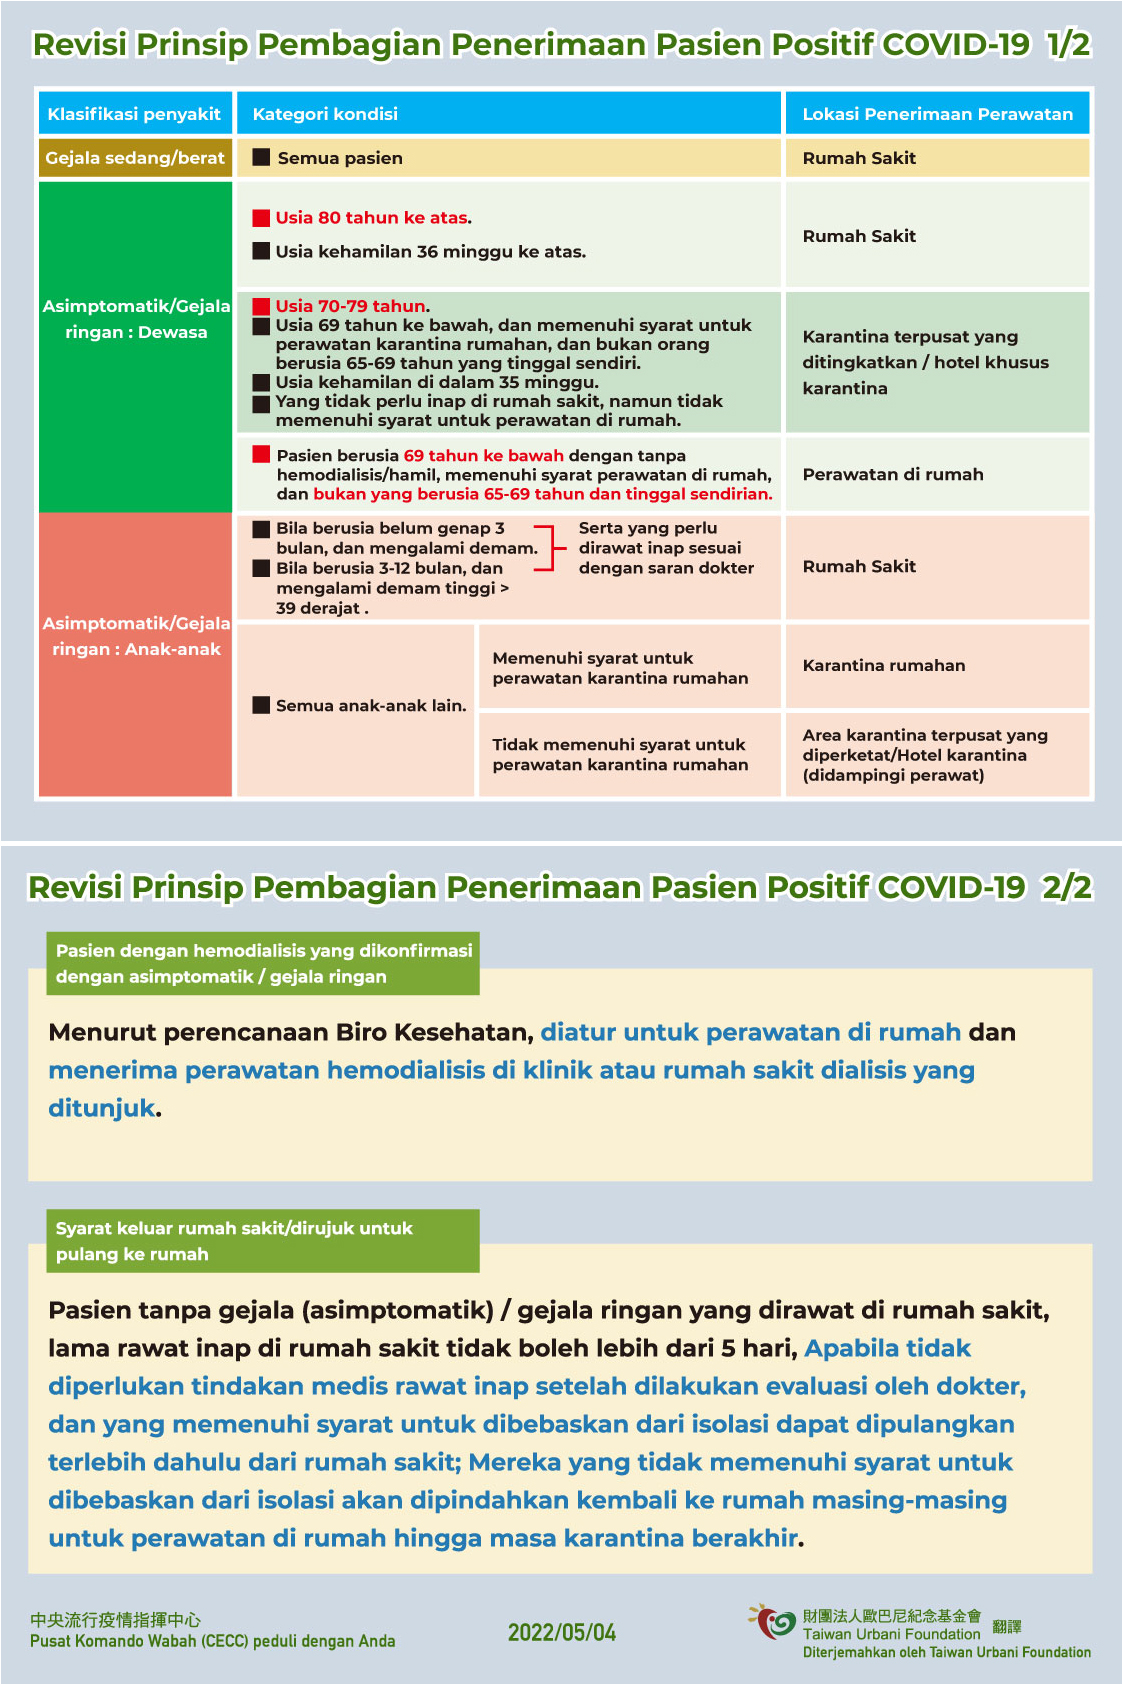 1110504-修訂COVID-19確診者分流原則(印尼).jpg